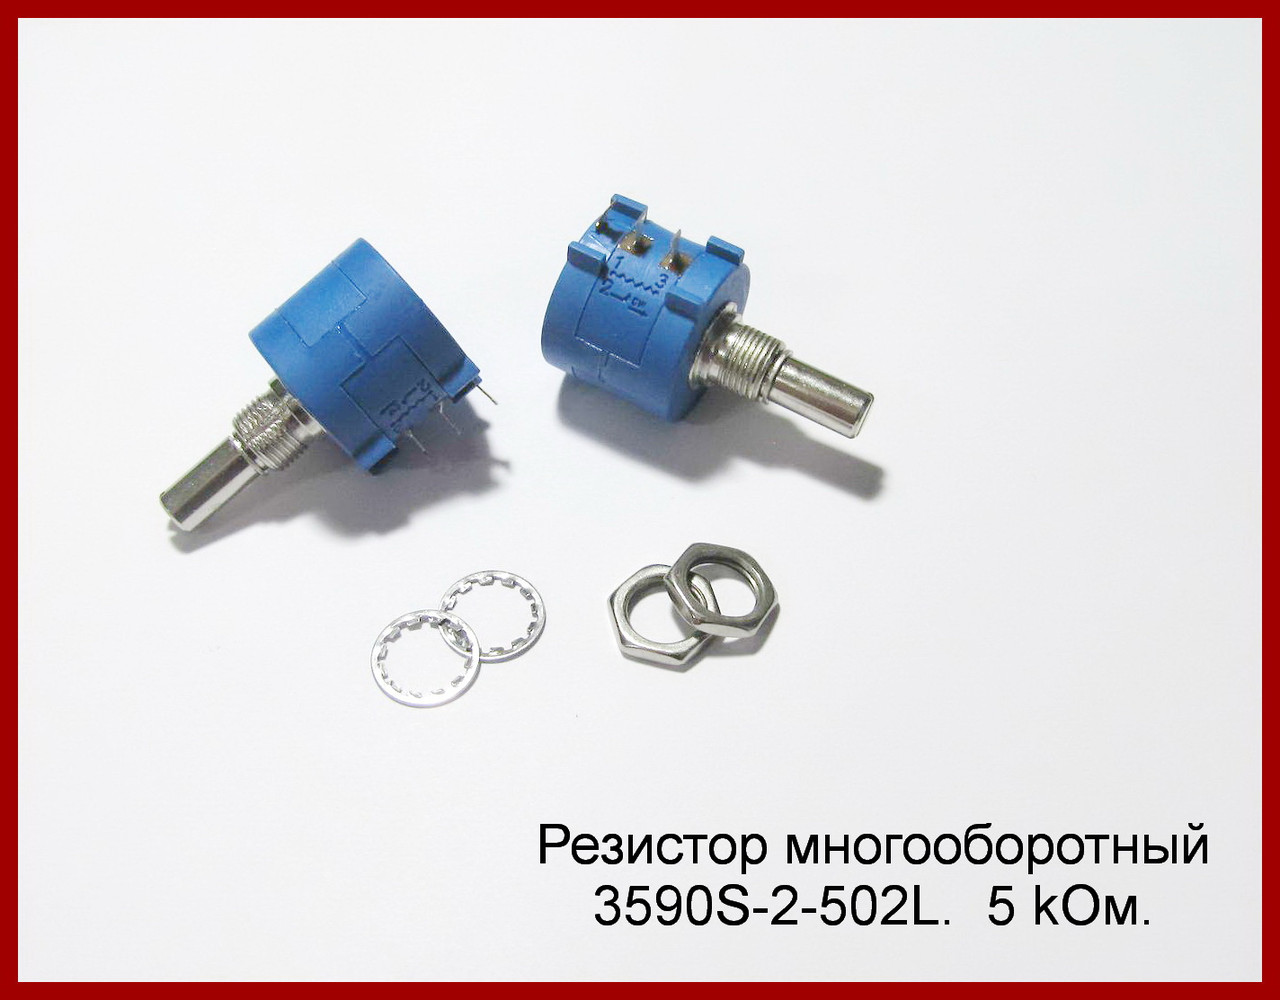 Резистор багатообертовий 3590S-2-502L, 5 kОм.